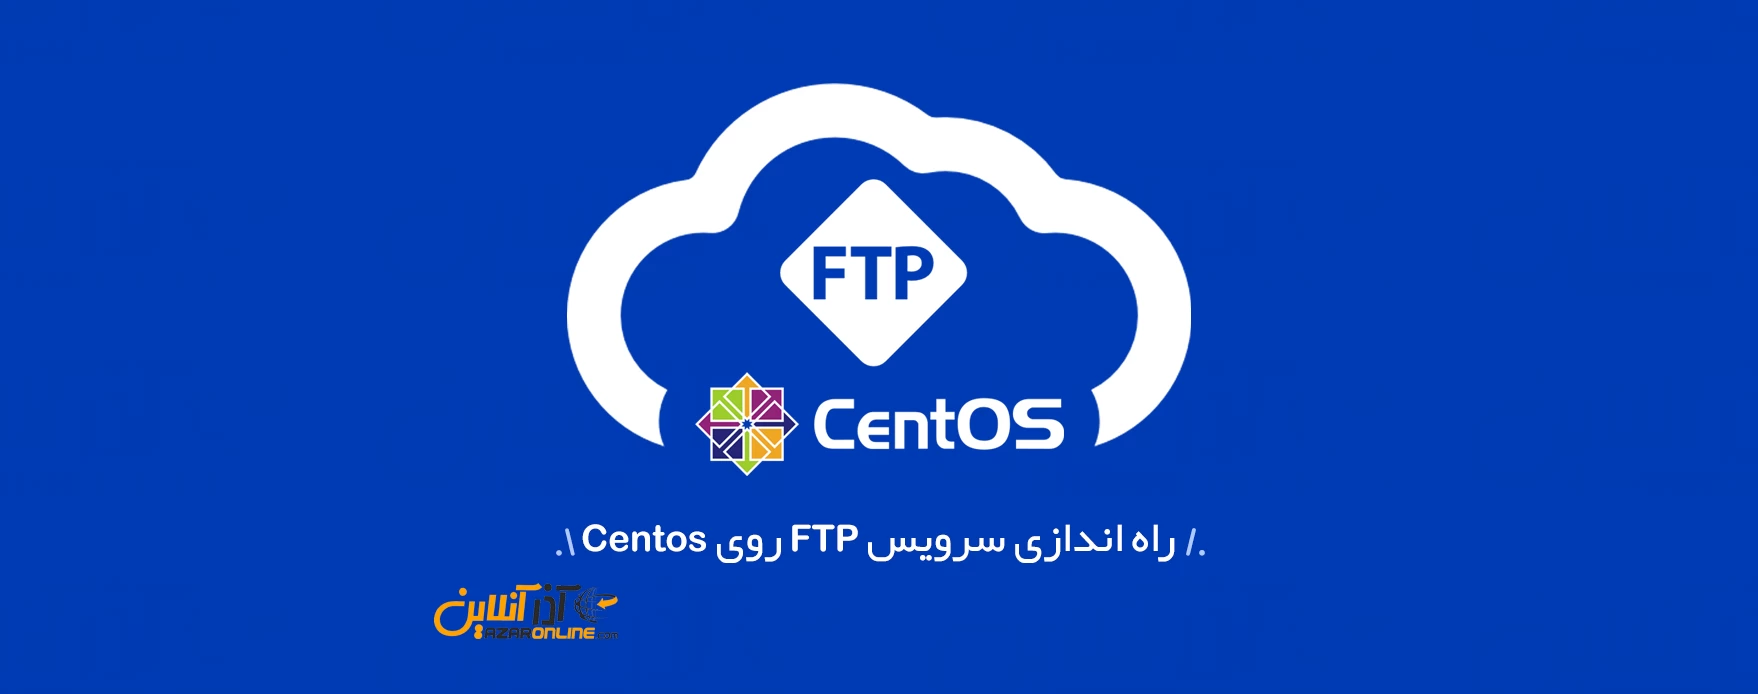 آموزش نصب سرویس FTP روی لینوکس Centos